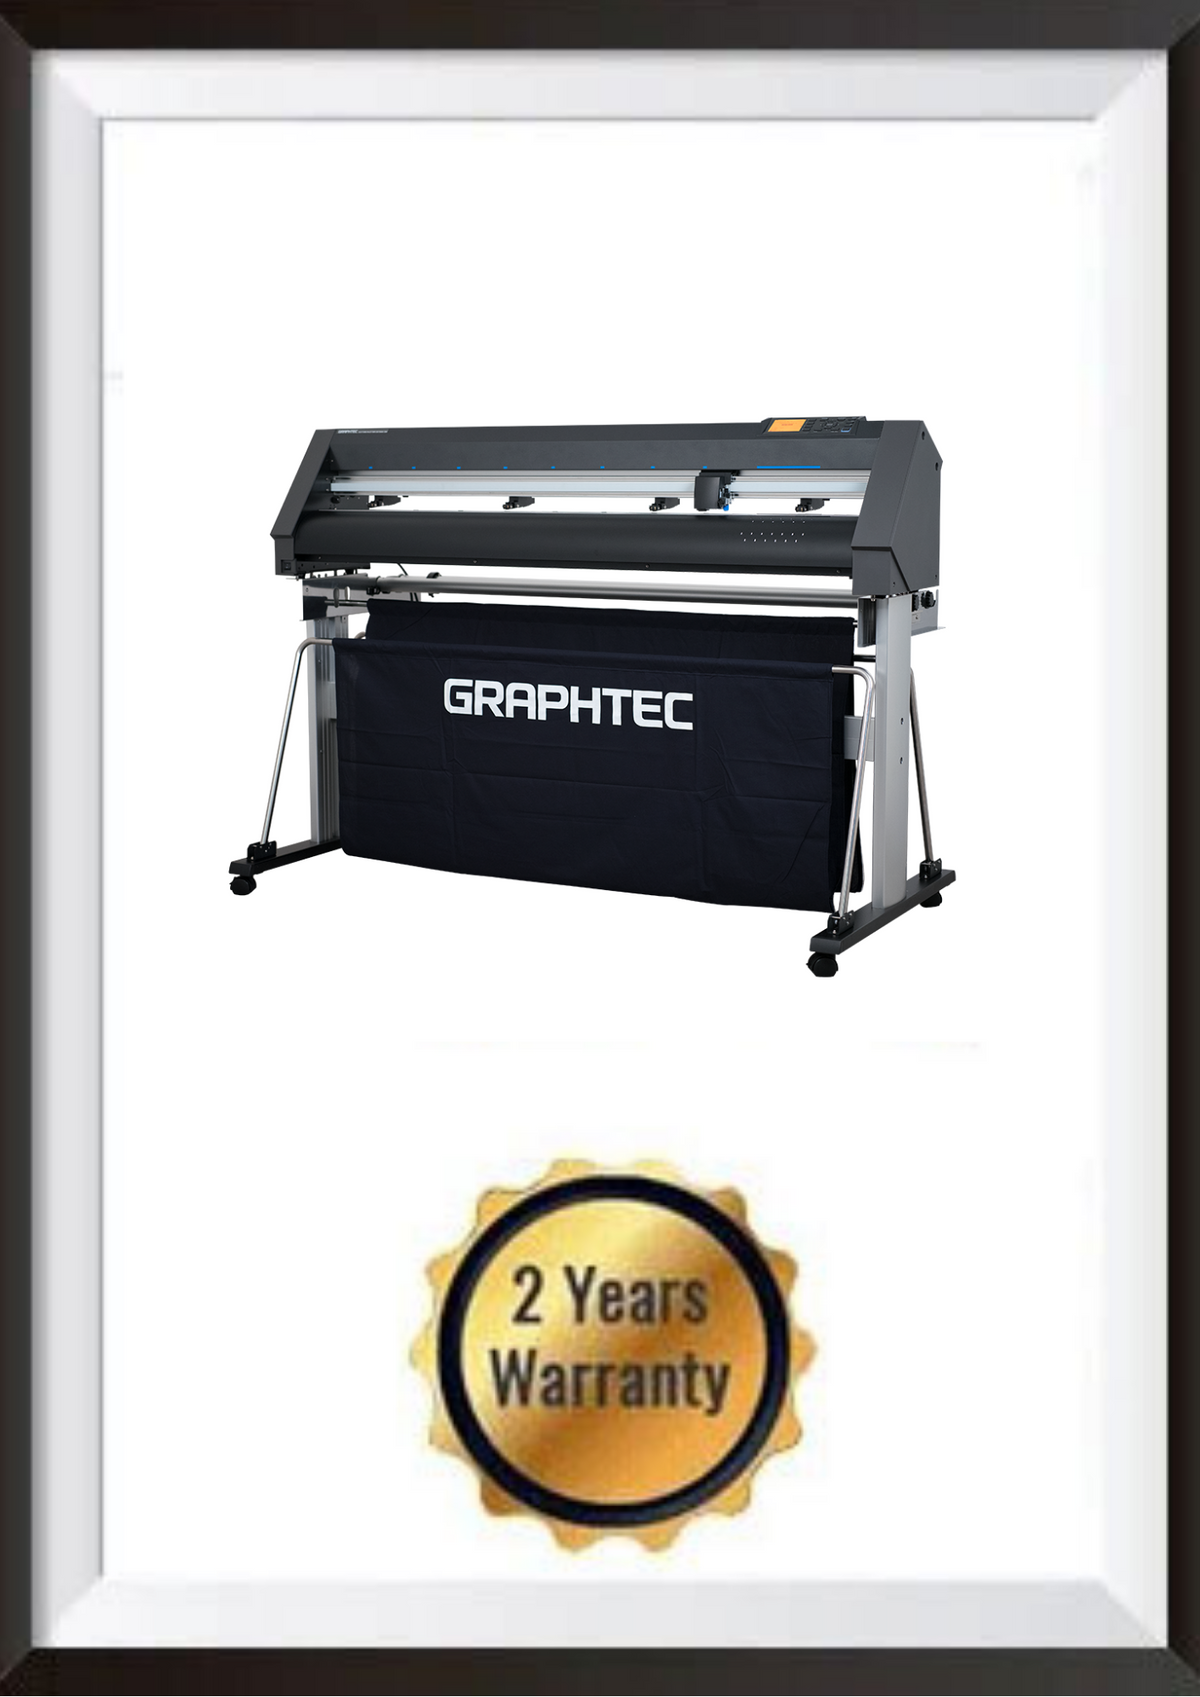 Graphtec CE7000-40, 60 & 130 Bundles on Sale